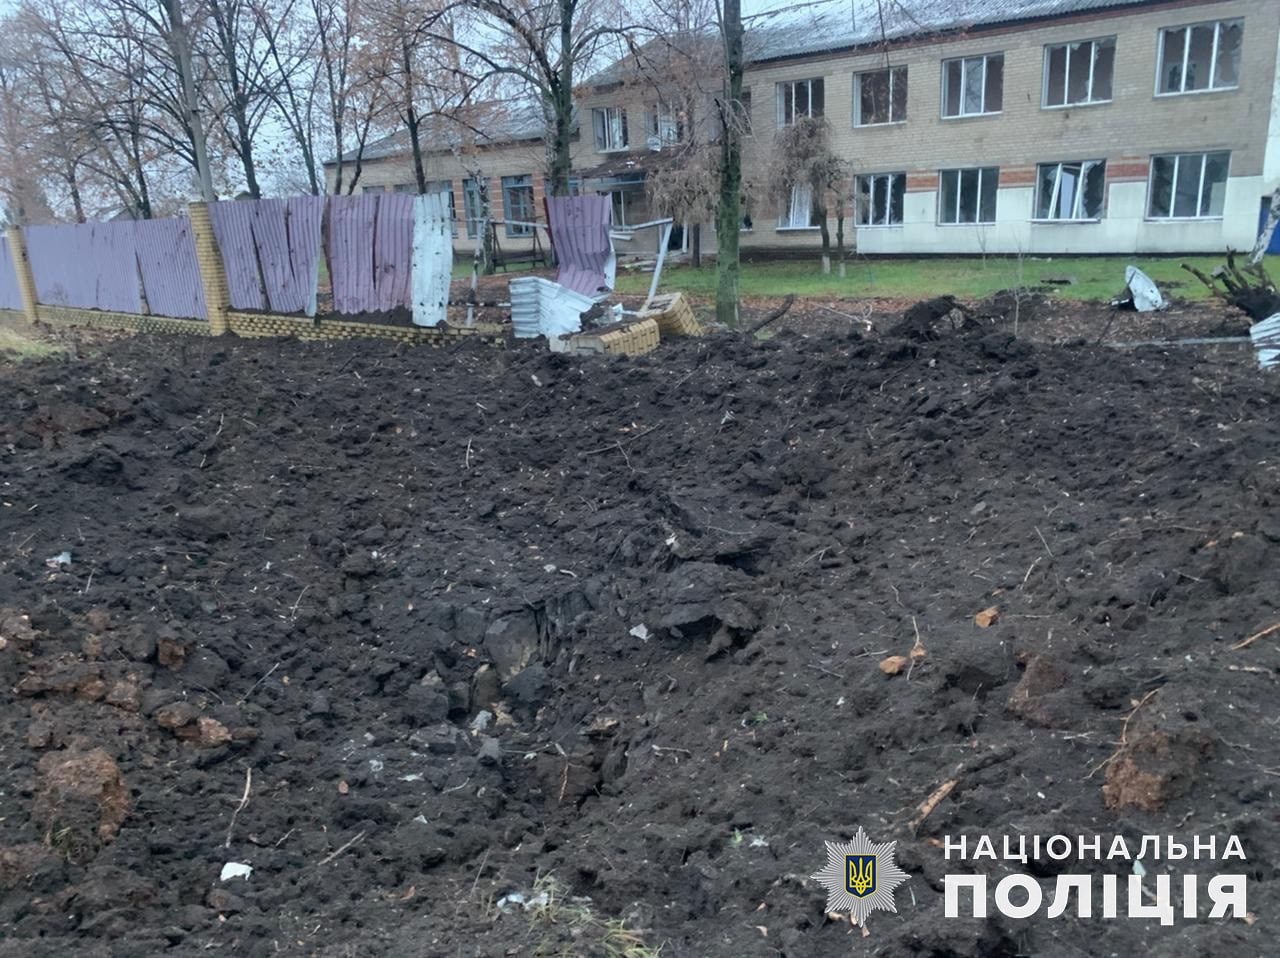 вирва після обстрілу в Донецькій області